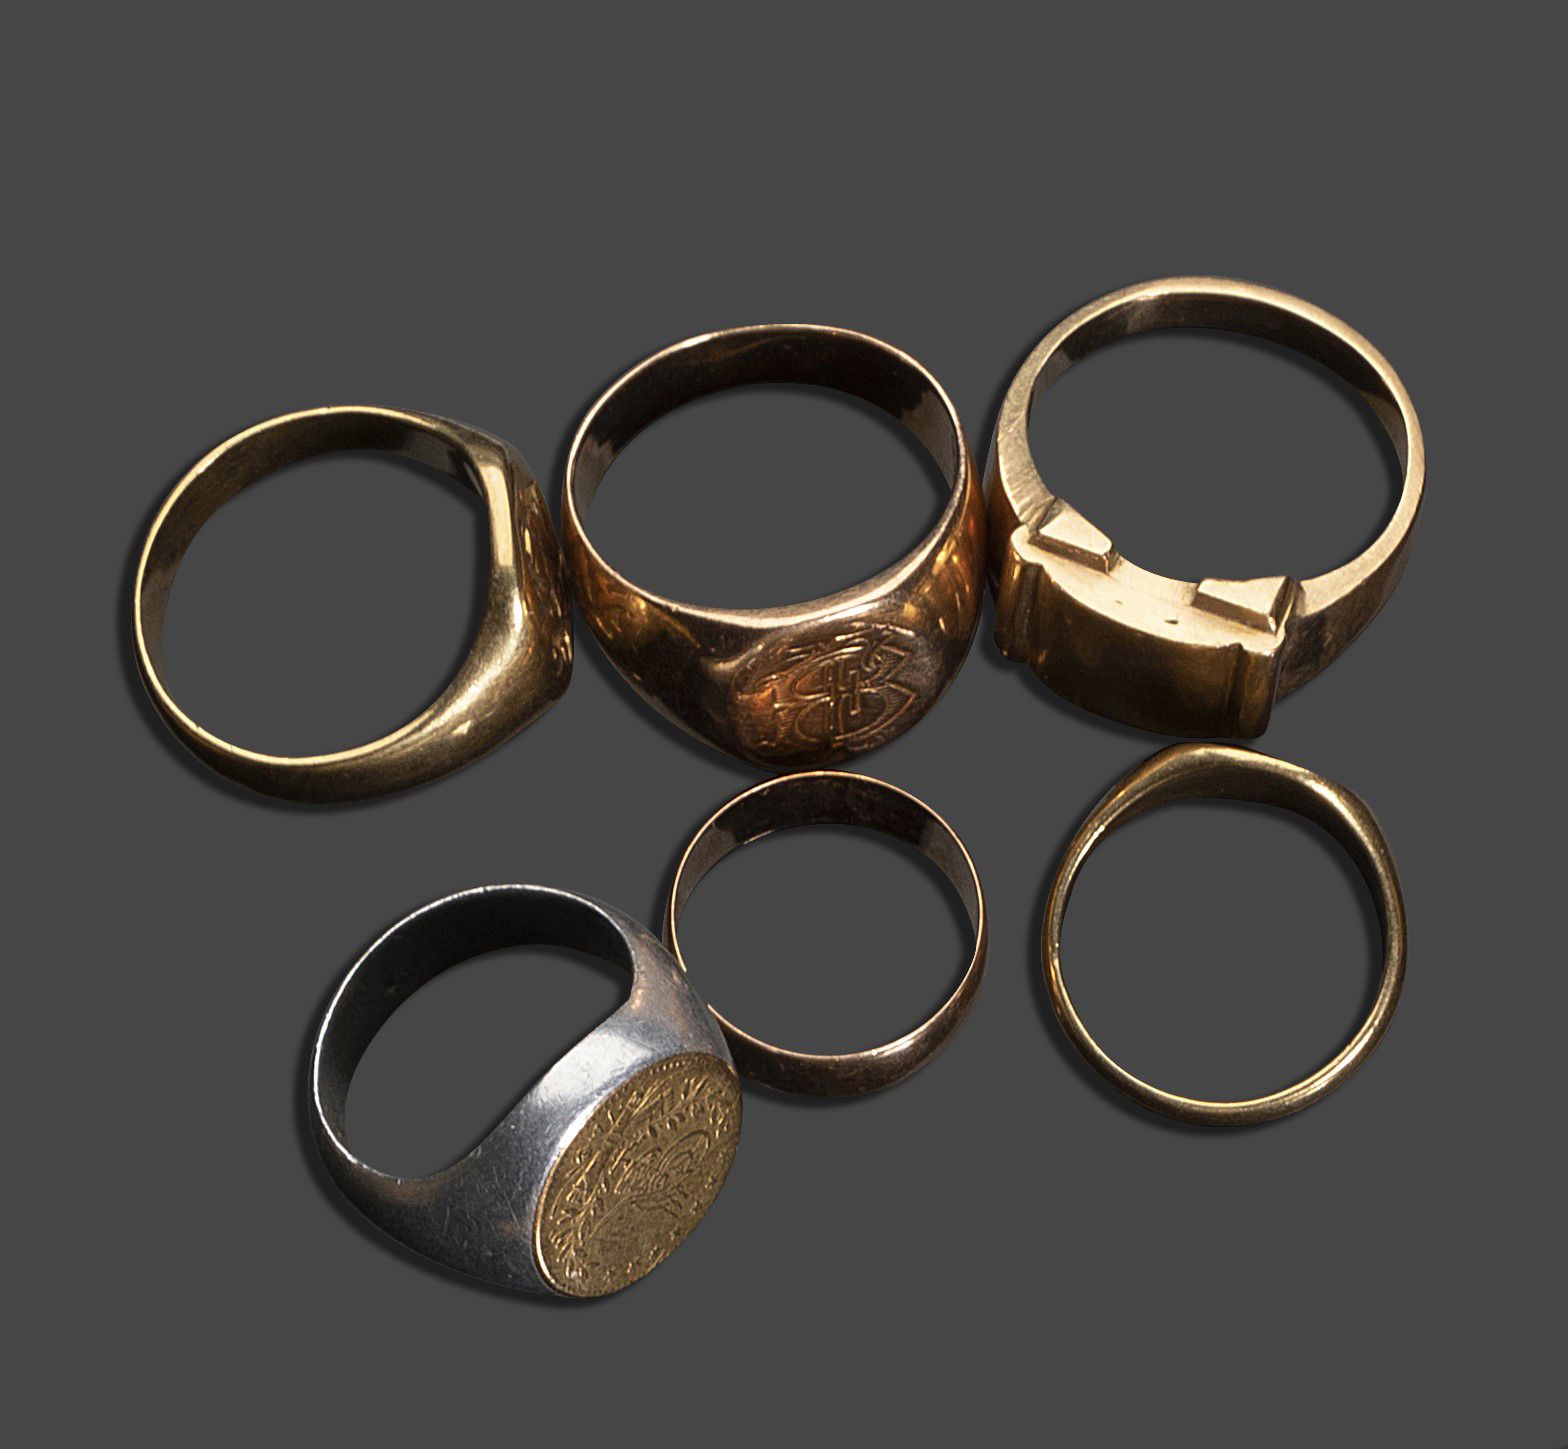 Null 五枚18K(750)黄金签章戒指，一枚银质签章戒指上镶嵌了一块黄金，还有一枚黄金结婚戒指。
黄金重量：47.68克